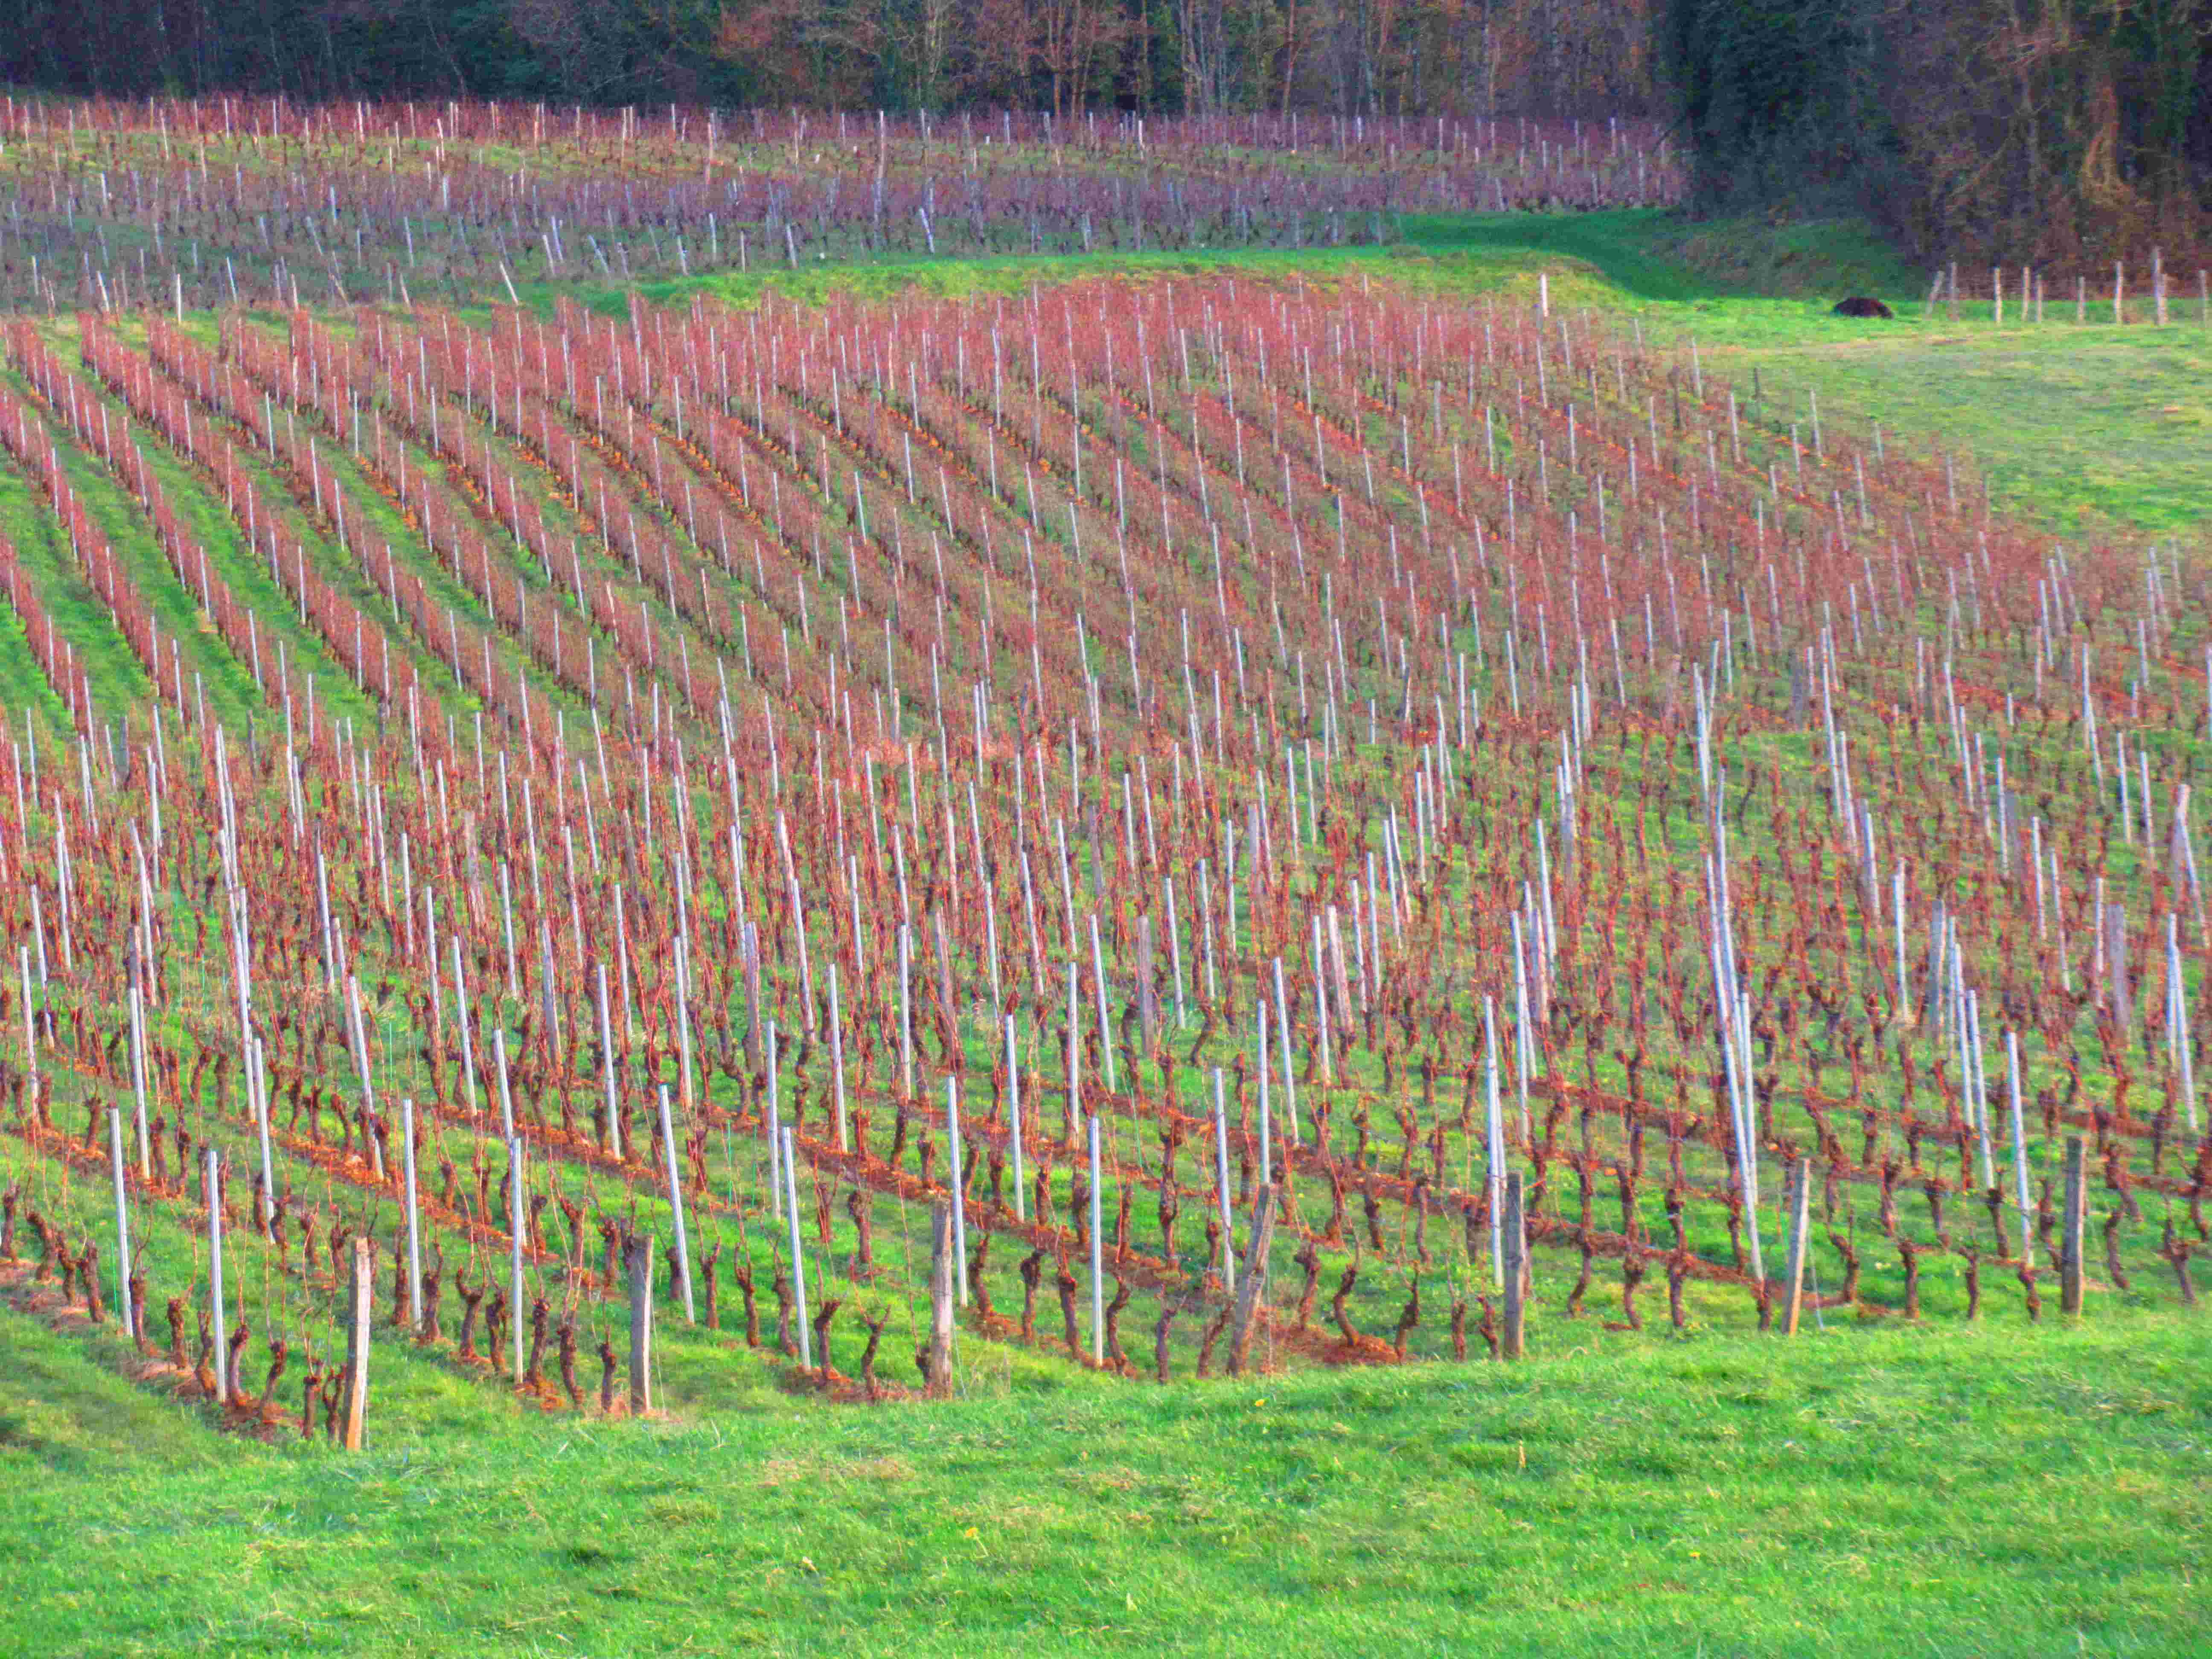 Vigne à Passenans dans les coteaux du Jura - France